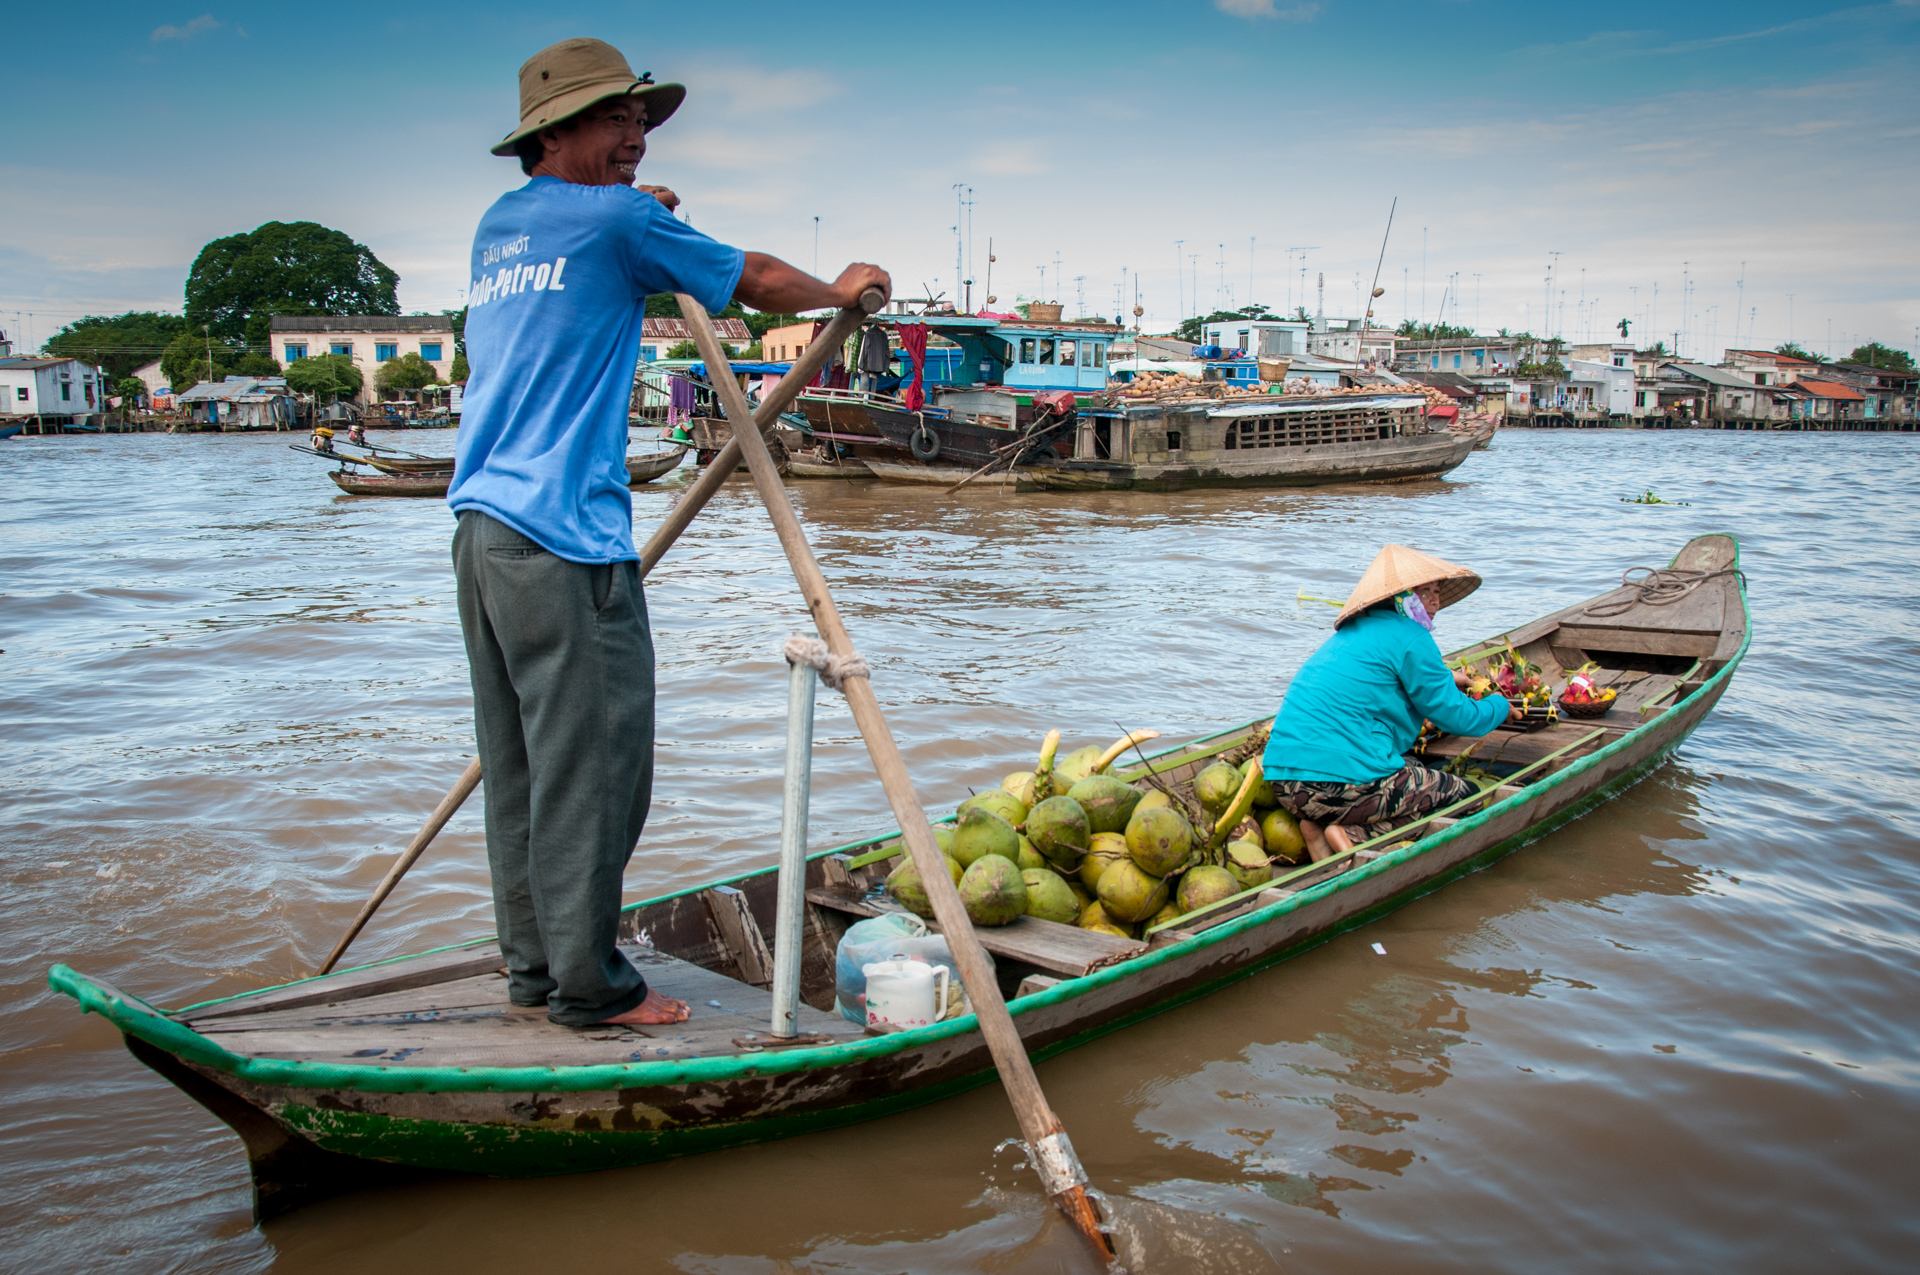 Mekong River of Life